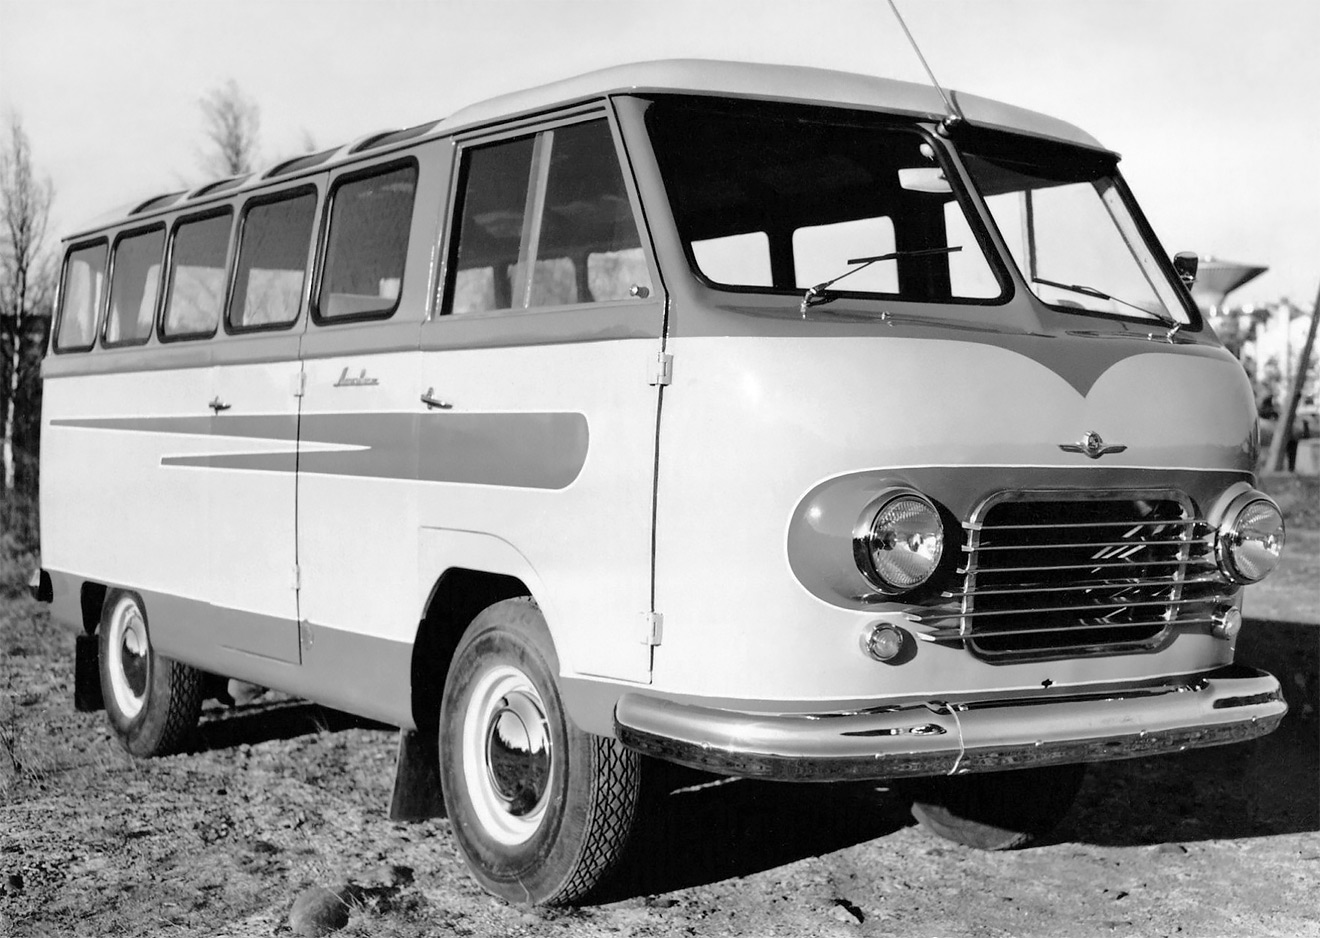 Первый по-настоящему массовый советский микроавтобус&nbsp;&mdash; плод модернизации РАФ-10. Модель получила 70-сильный двигатель ГАЗ-21 и обросла десятком модификаций, включая более комфортабельные туристические версии и медицинские автомобили, а в Ереване она выпускалась в виде грузового фургона под маркой ЕрАЗ-762. Наконец, РАФ-977 стал первой советской маршруткой, сменил в службе такси легковые ЗИМы и работал в таксопарках вплоть до середины 70-х годов прошлого века.
